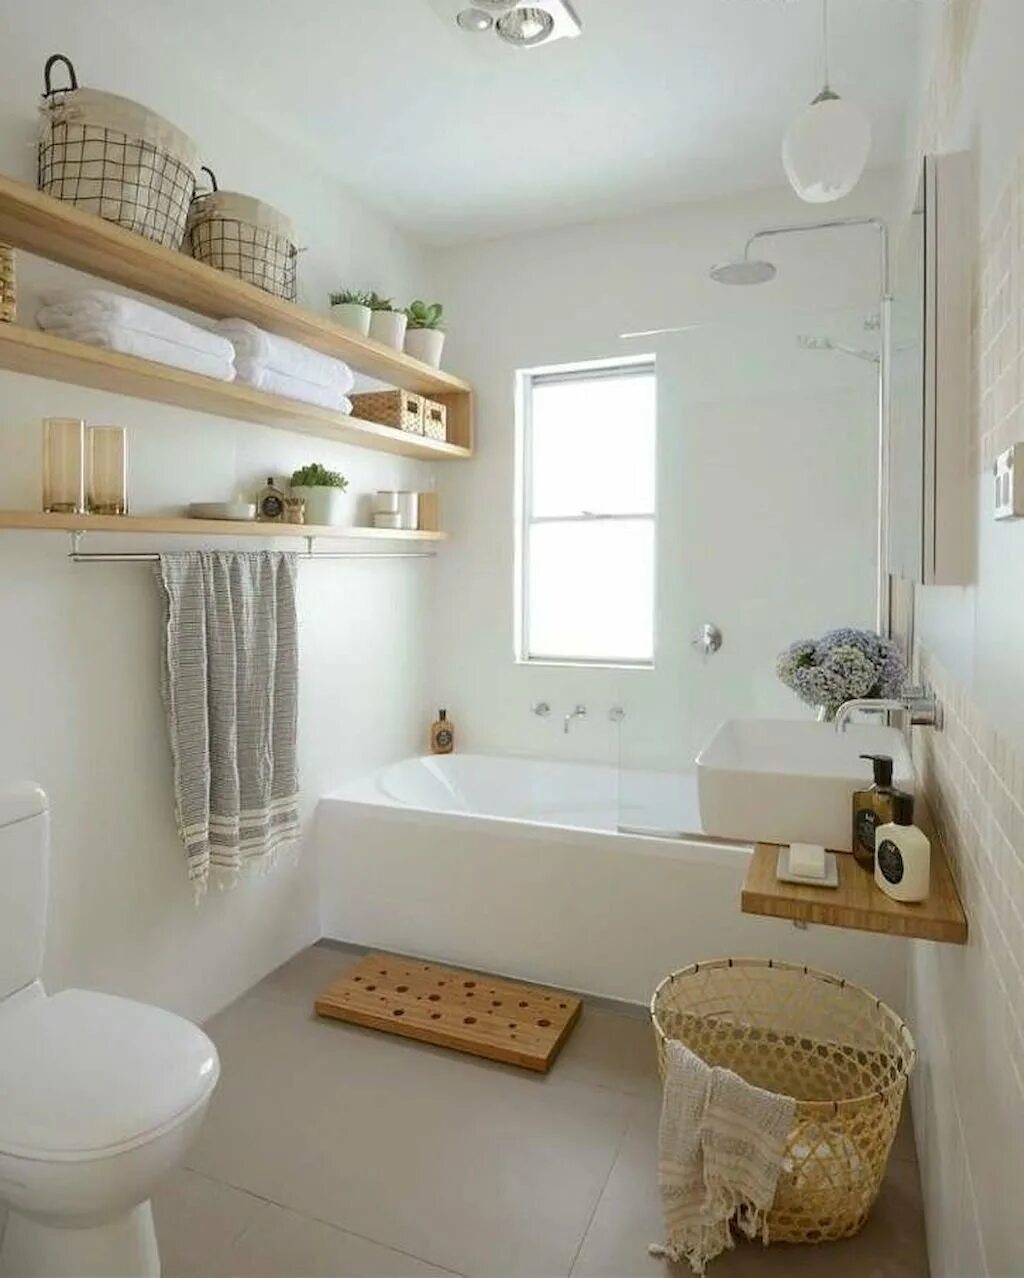 Ванна в ванной комнате в квартире. Уютная ванная комната. Идеи для ванной комнаты. Обустройство ванной комнаты. Уютная маленькая ванная.